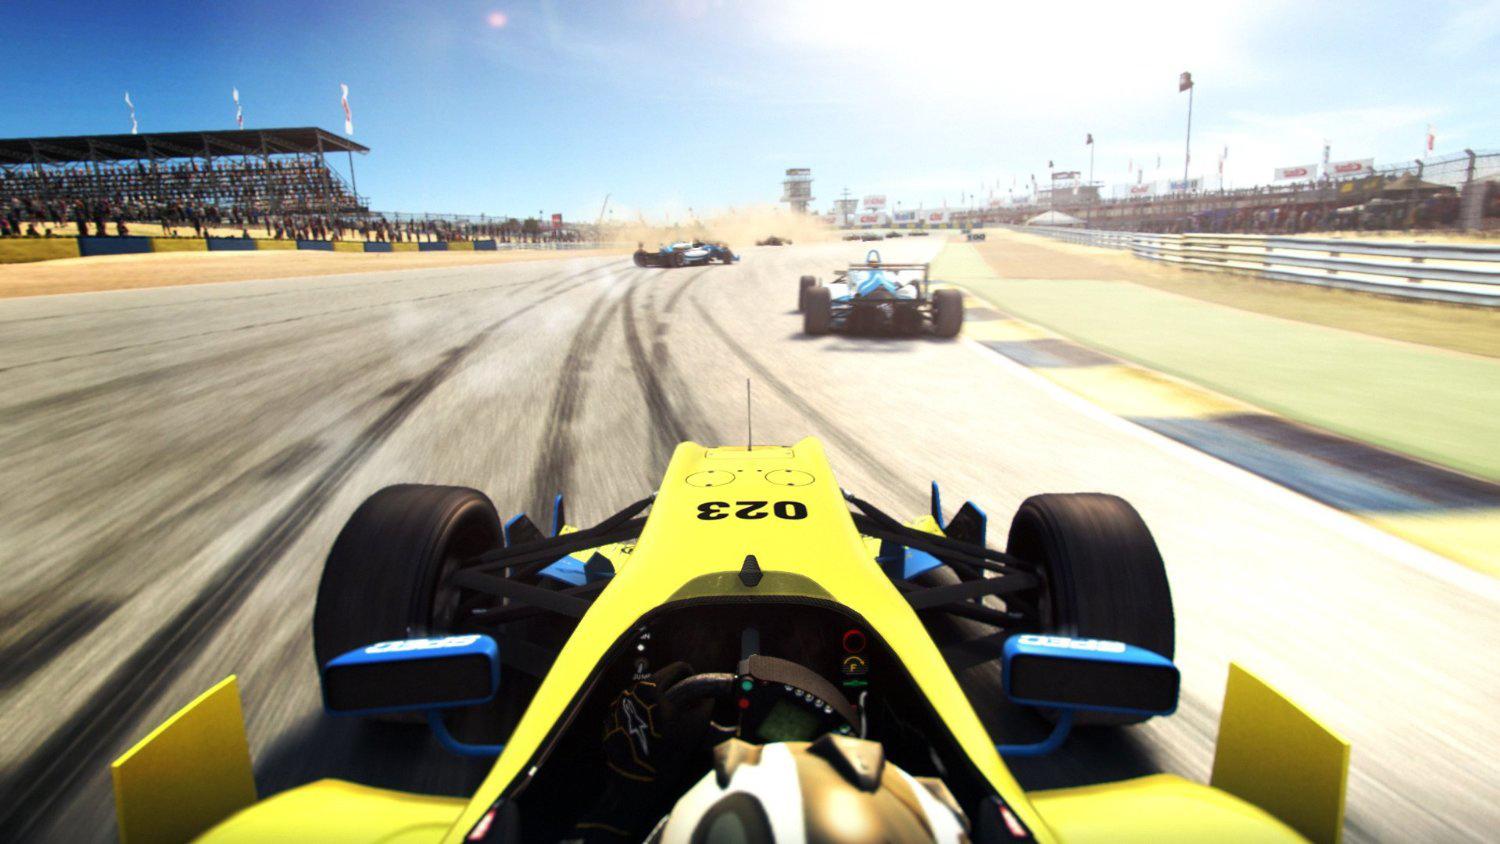 Grid: Autosport Reviews, Pros and Cons